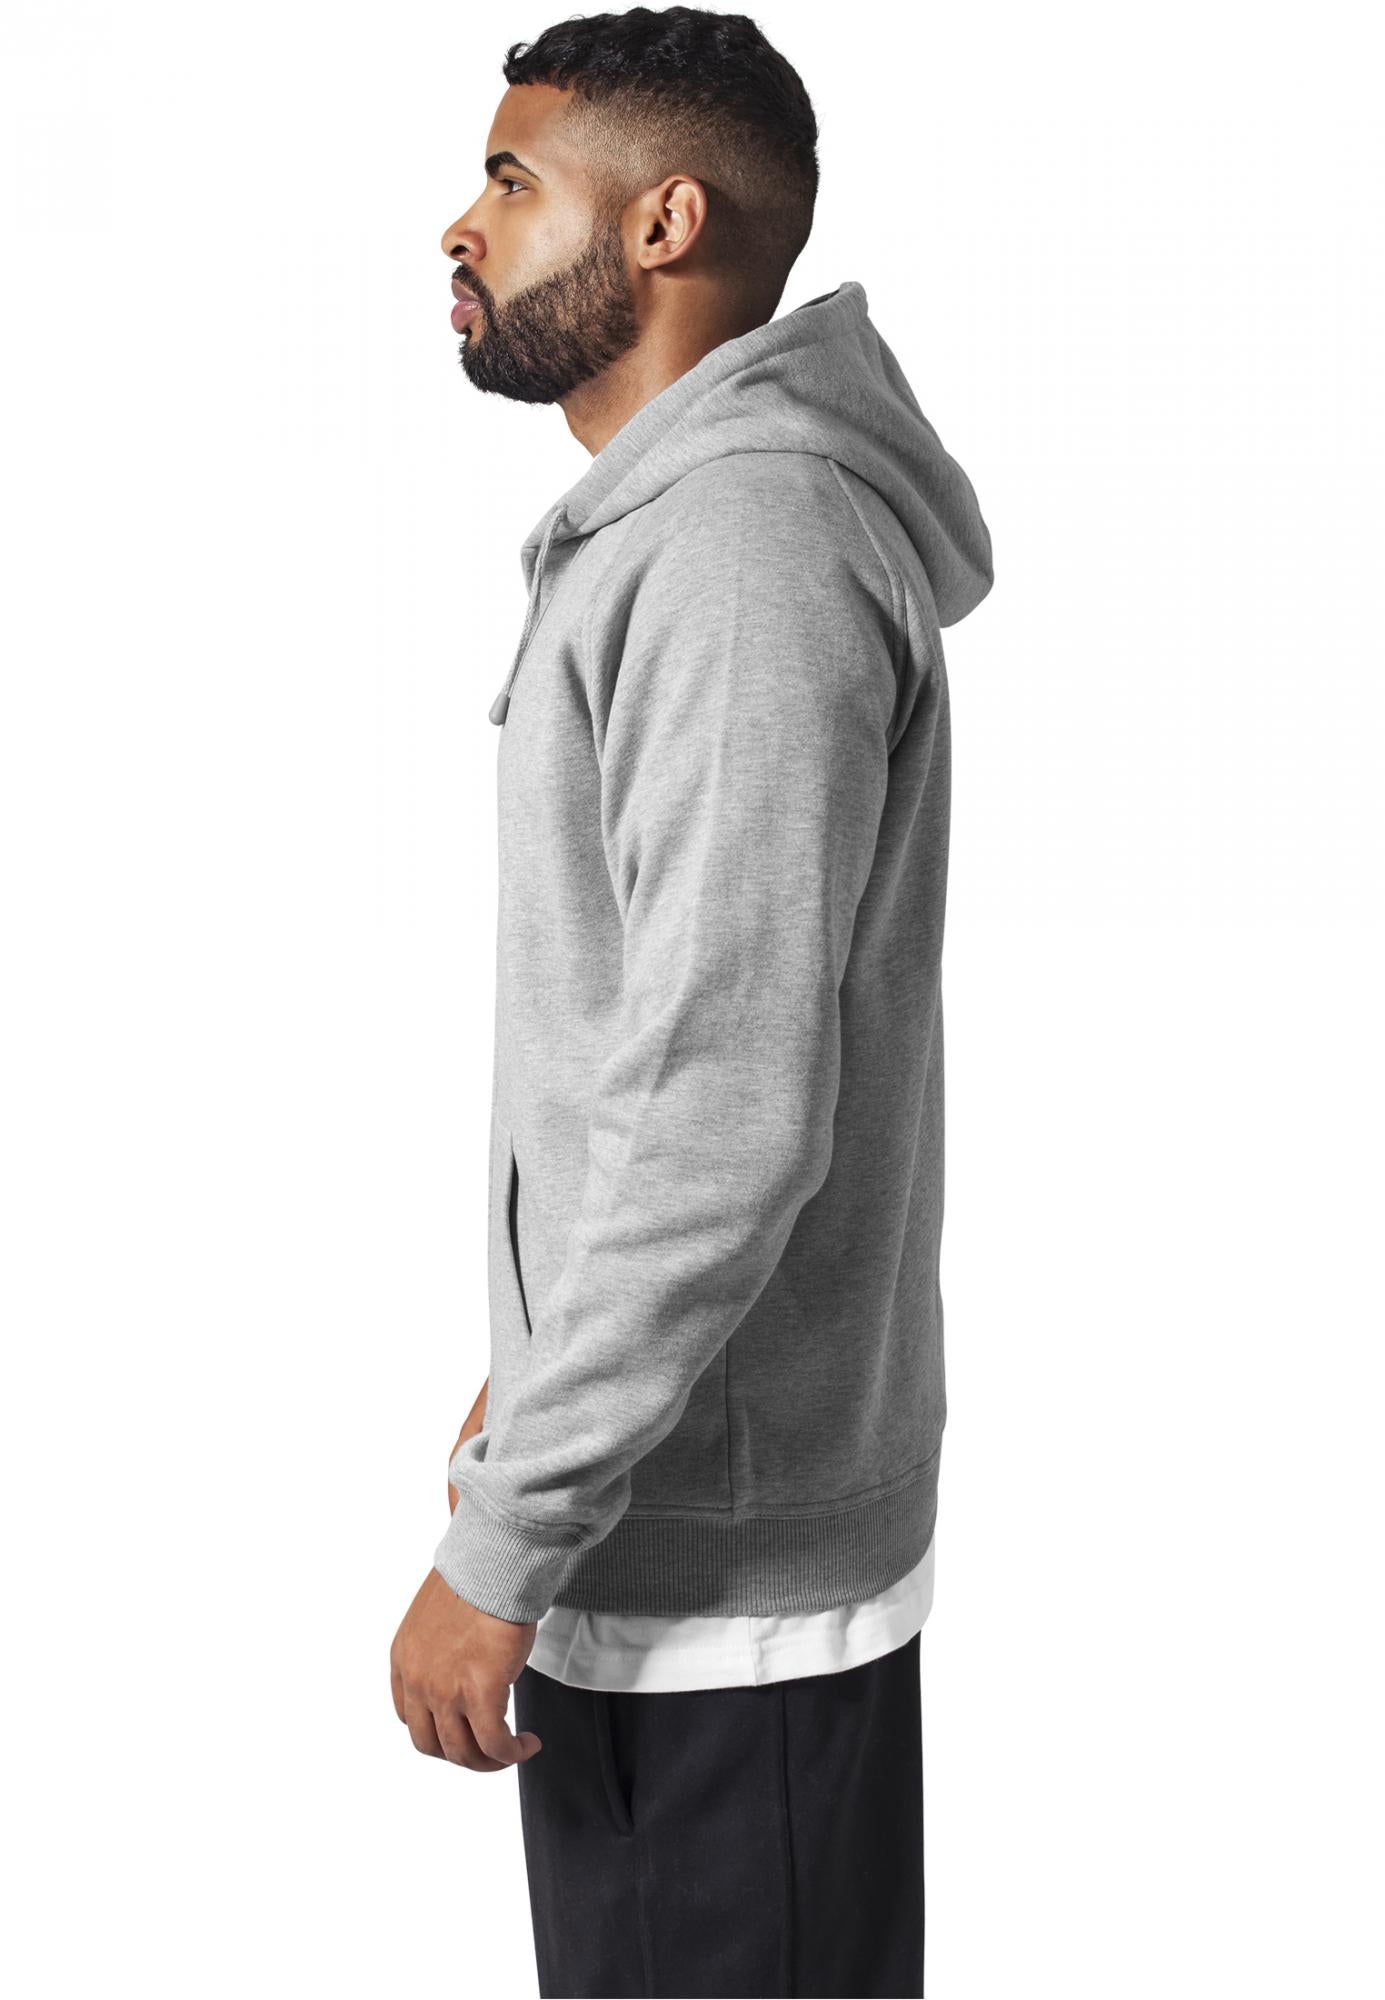 Urban Classics zip hoody grey - Shop-Tetuan